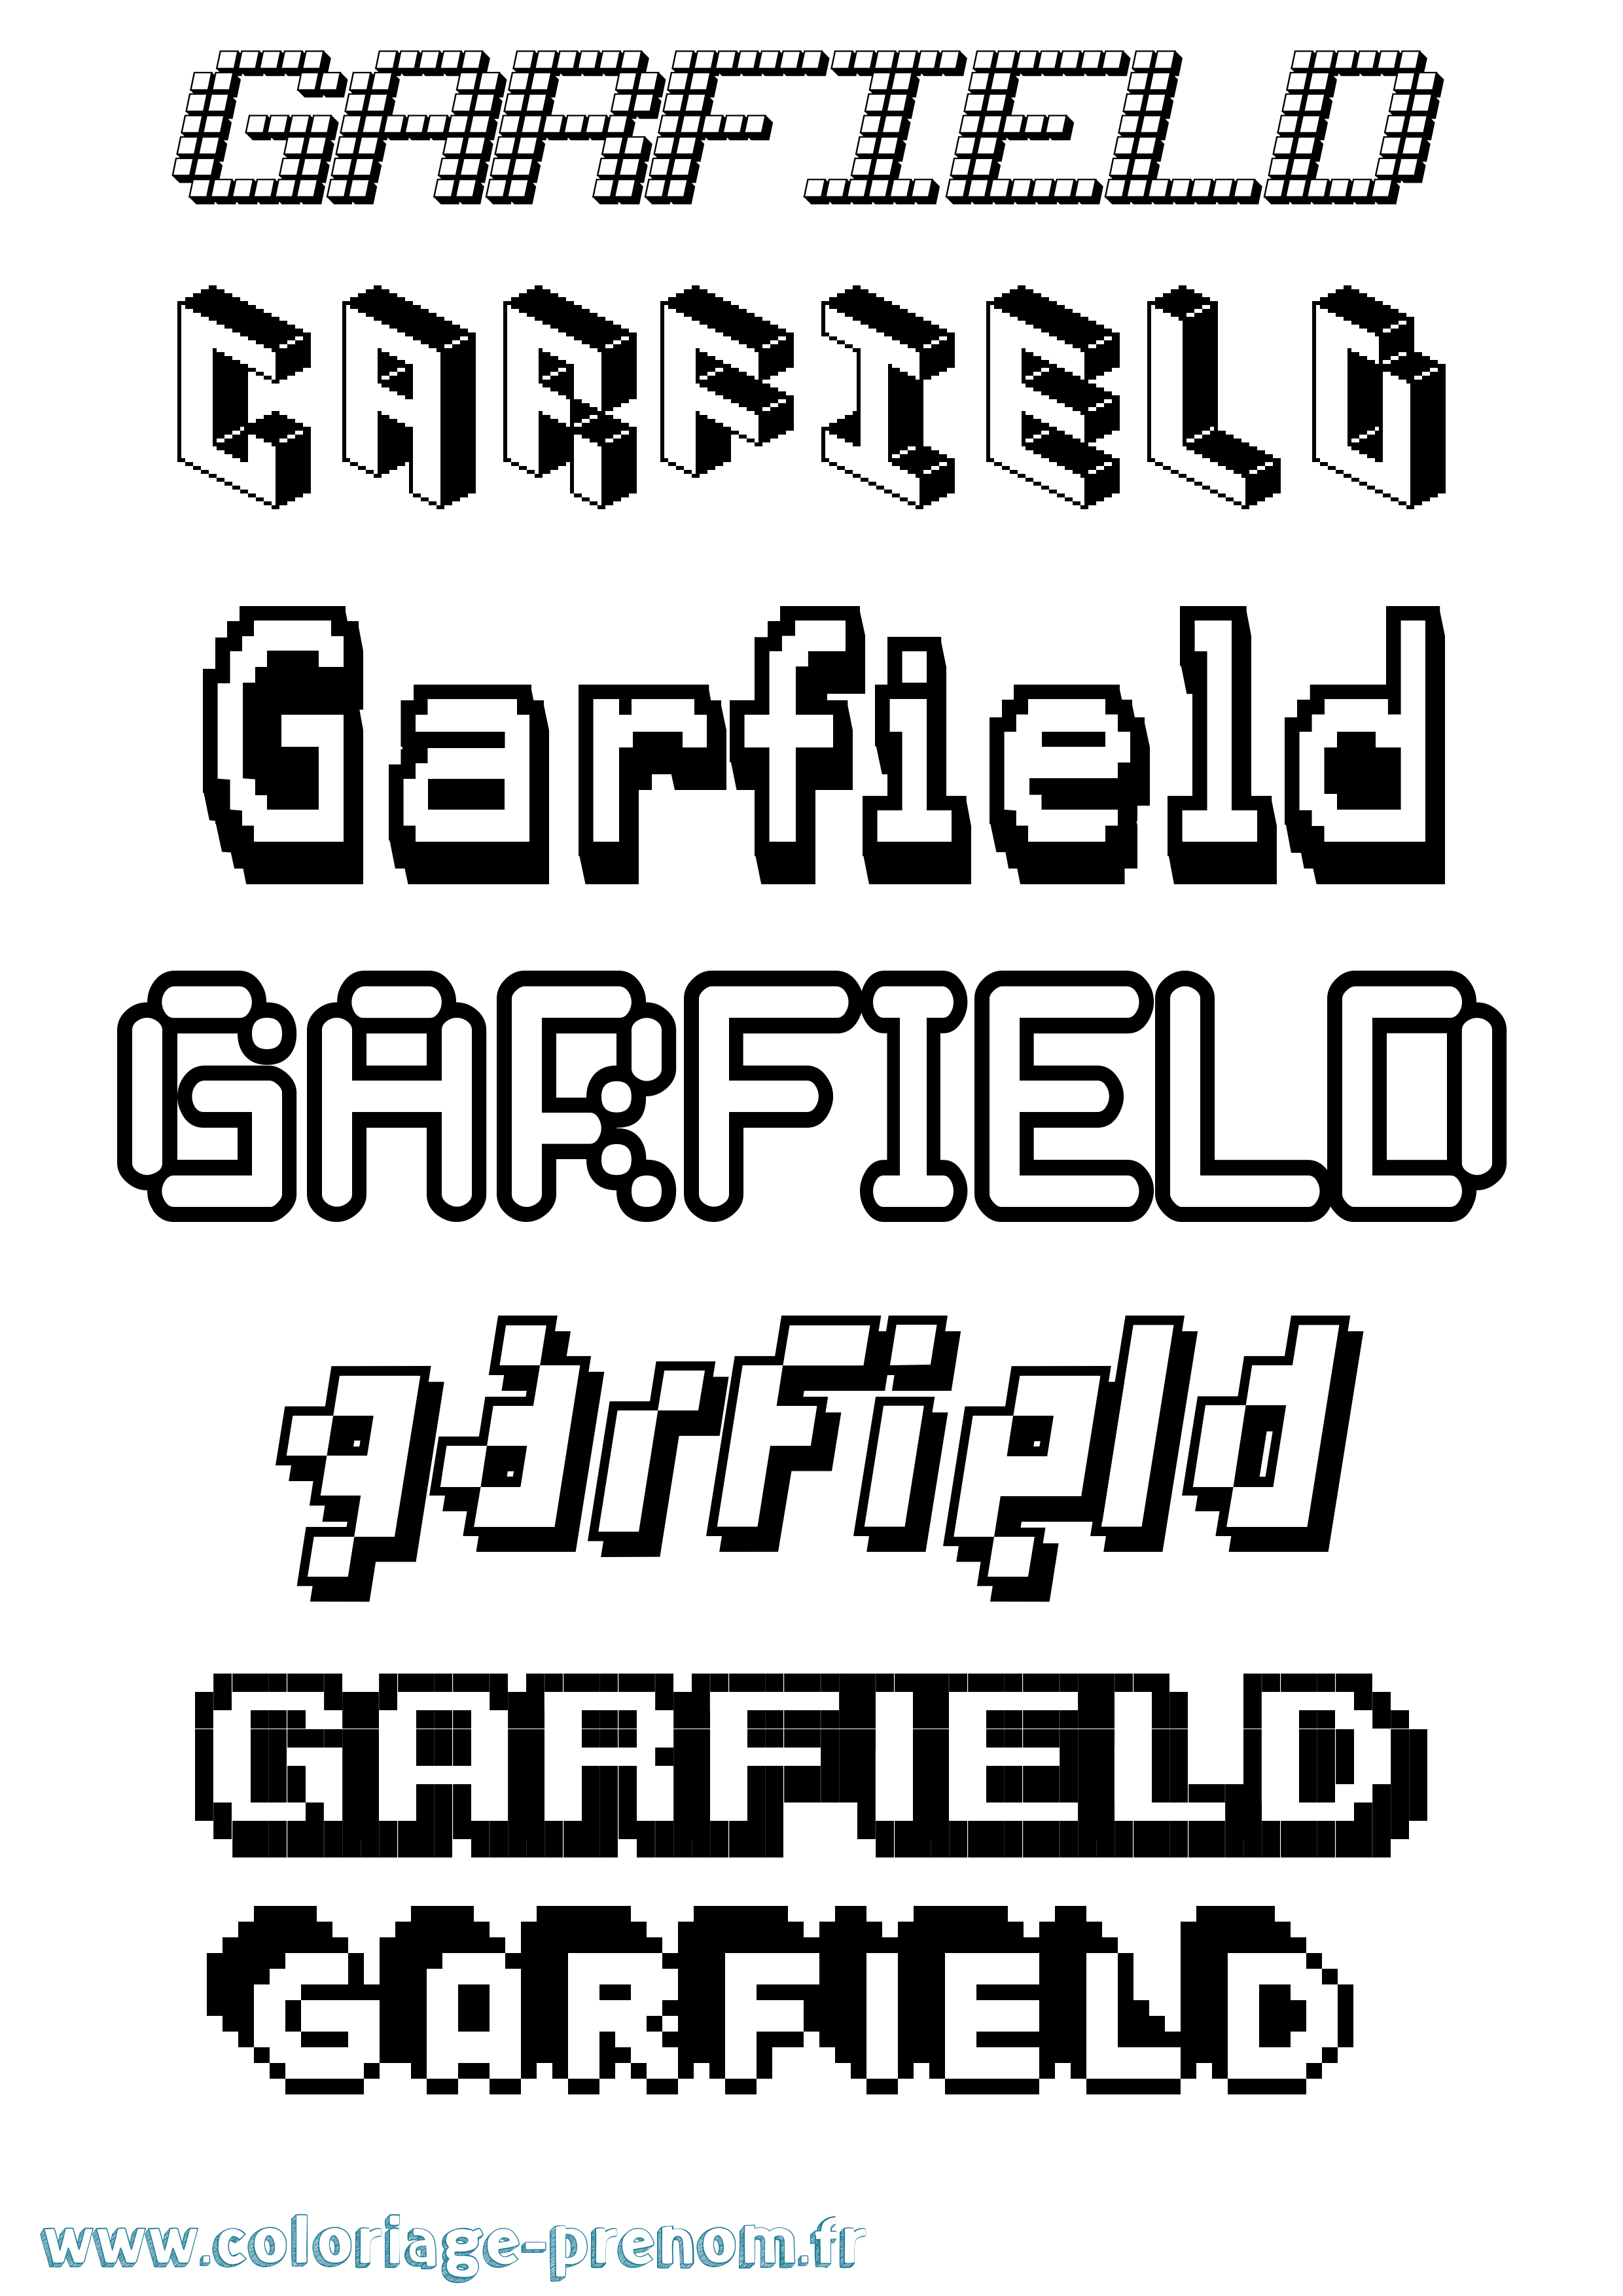 Coloriage prénom Garfield Pixel